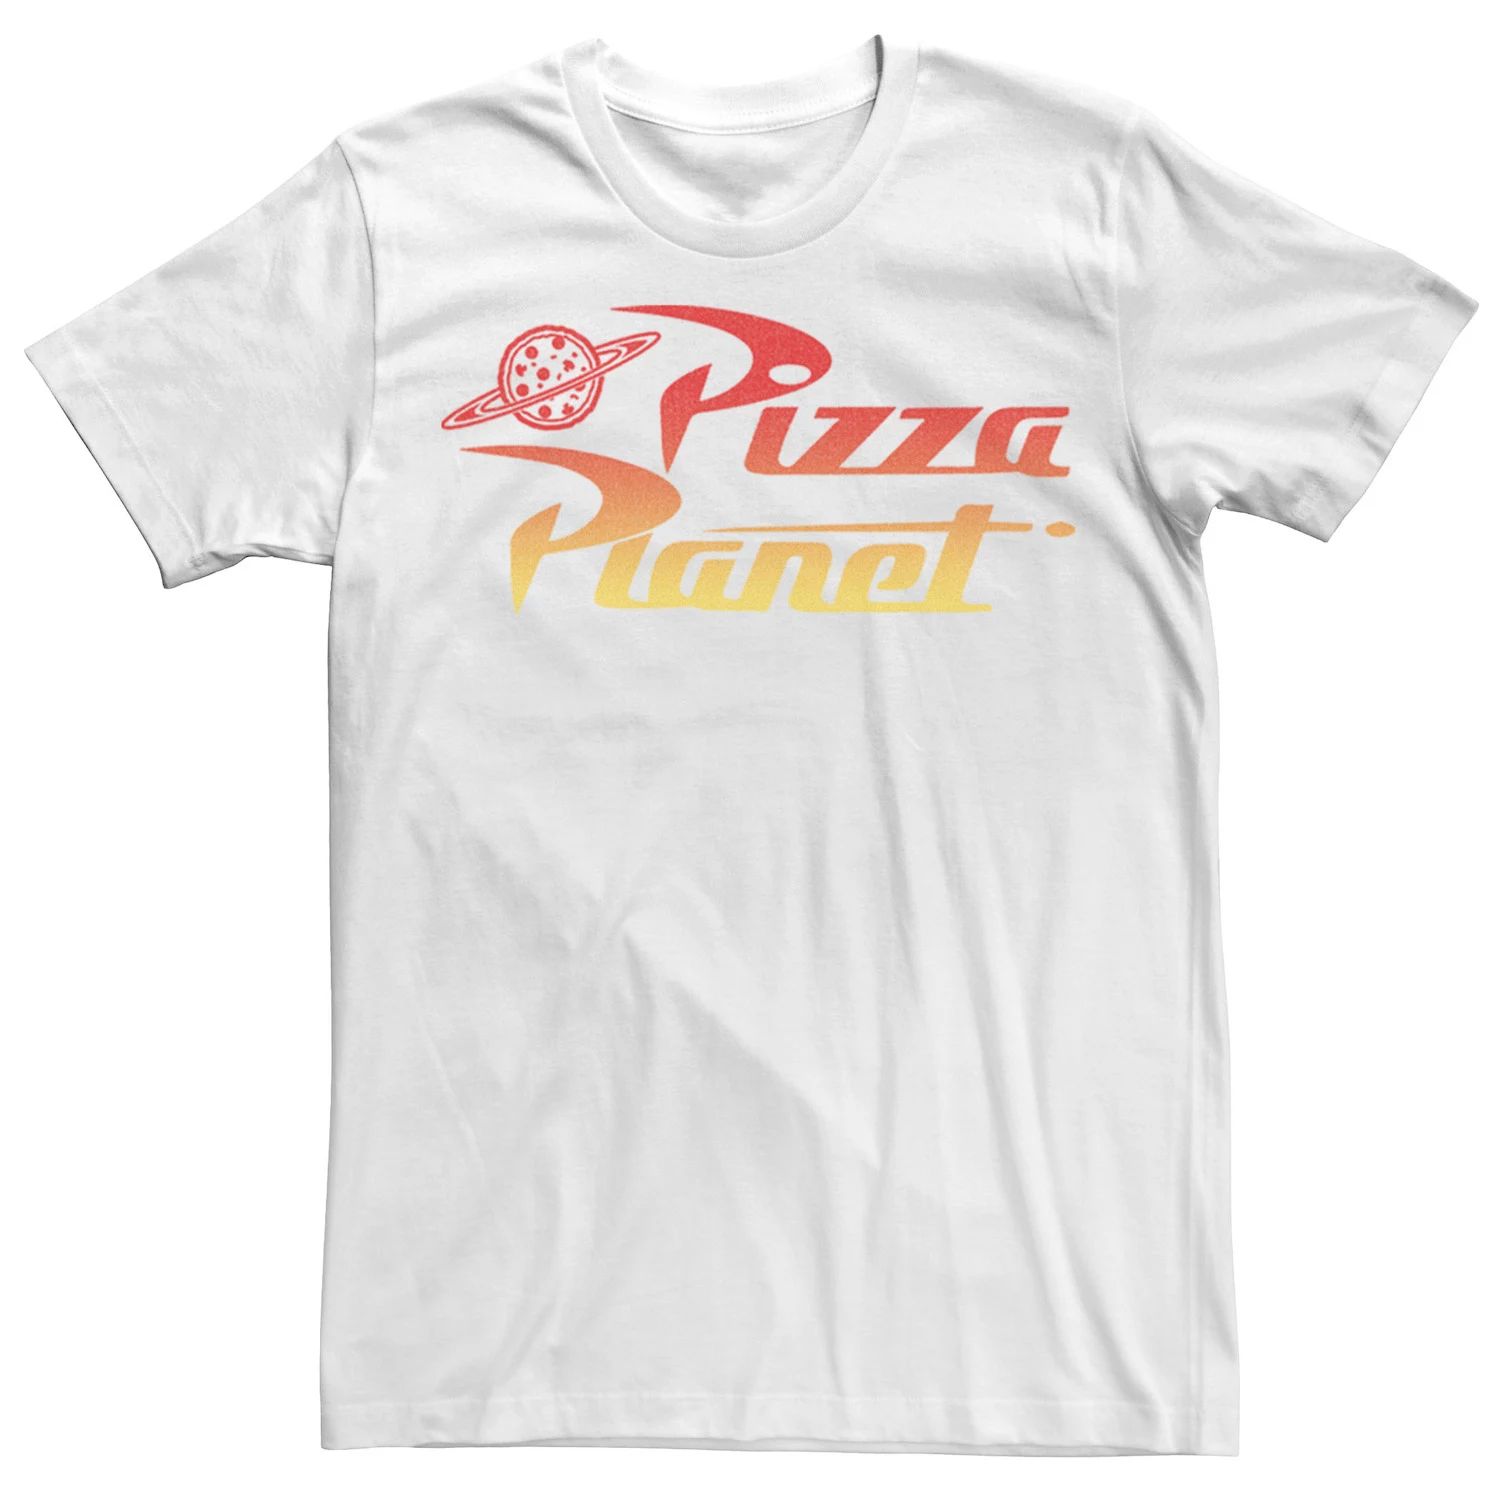 Мужская футболка с градиентным логотипом Disney/Pixar «История игрушек Пицца Планета» Disney / Pixar, белый мужская футболка планета пицца s черный